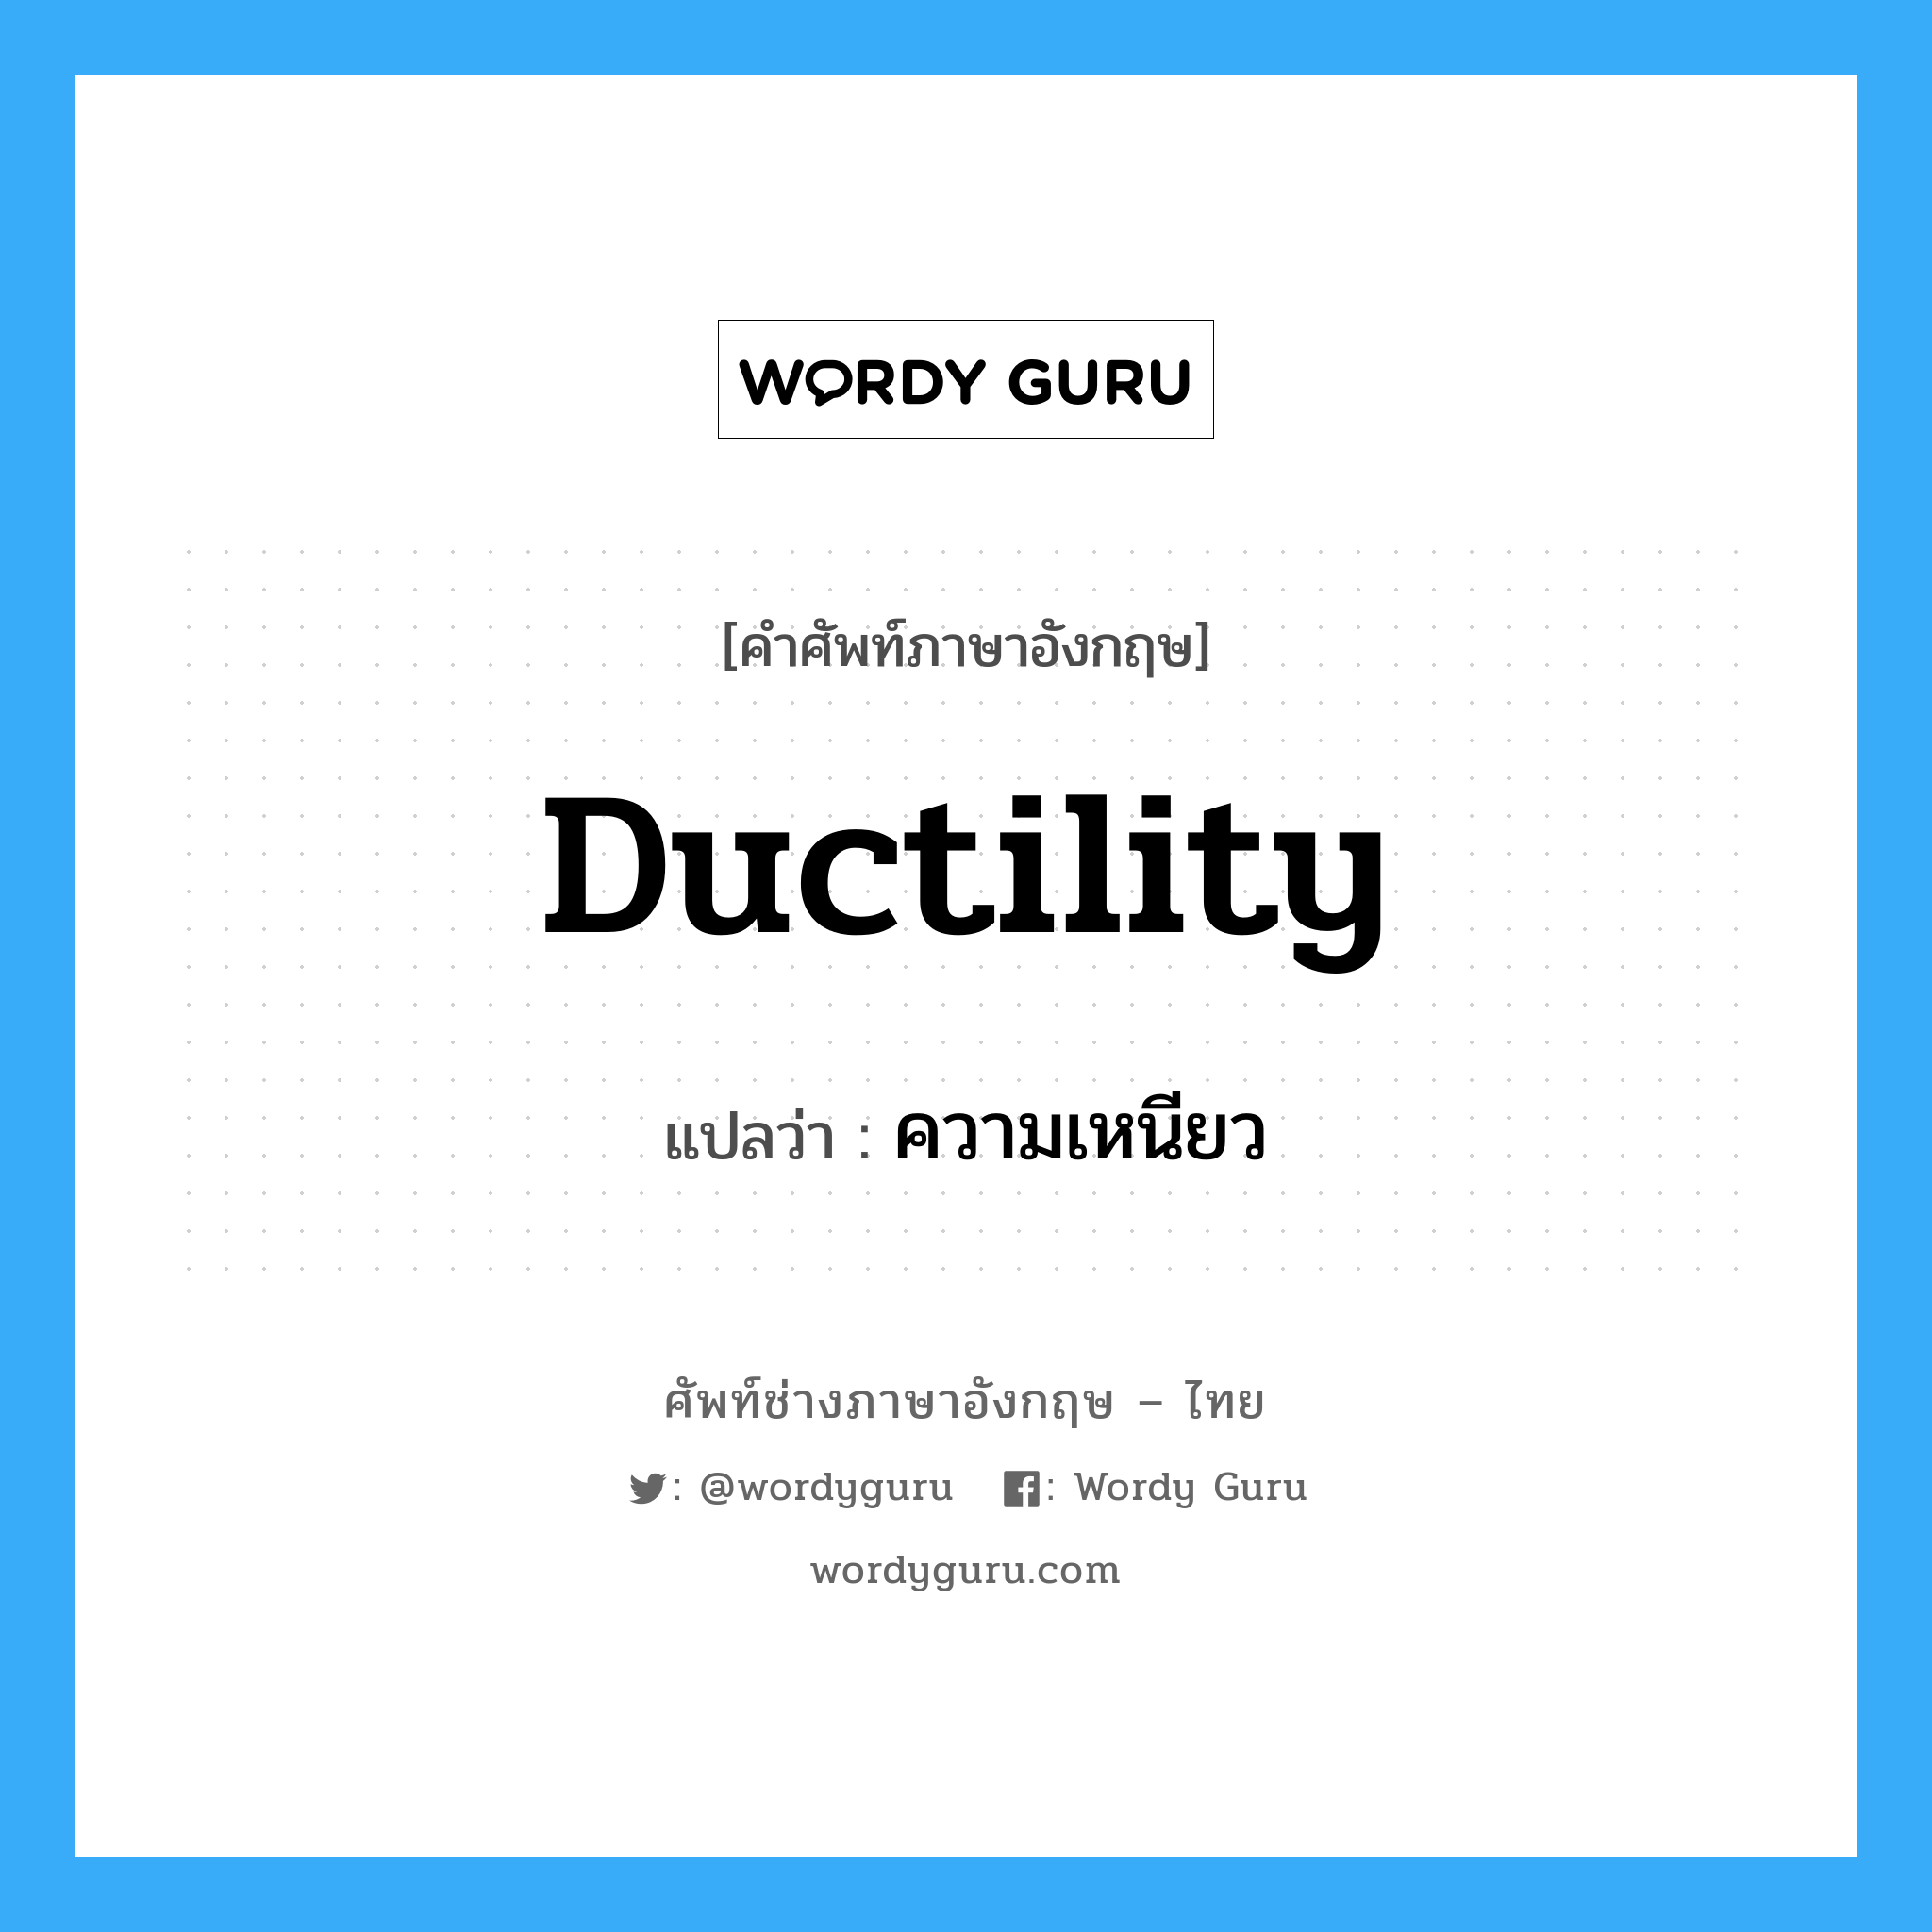 ความเหนียว ภาษาอังกฤษ?, คำศัพท์ช่างภาษาอังกฤษ - ไทย ความเหนียว คำศัพท์ภาษาอังกฤษ ความเหนียว แปลว่า ductility